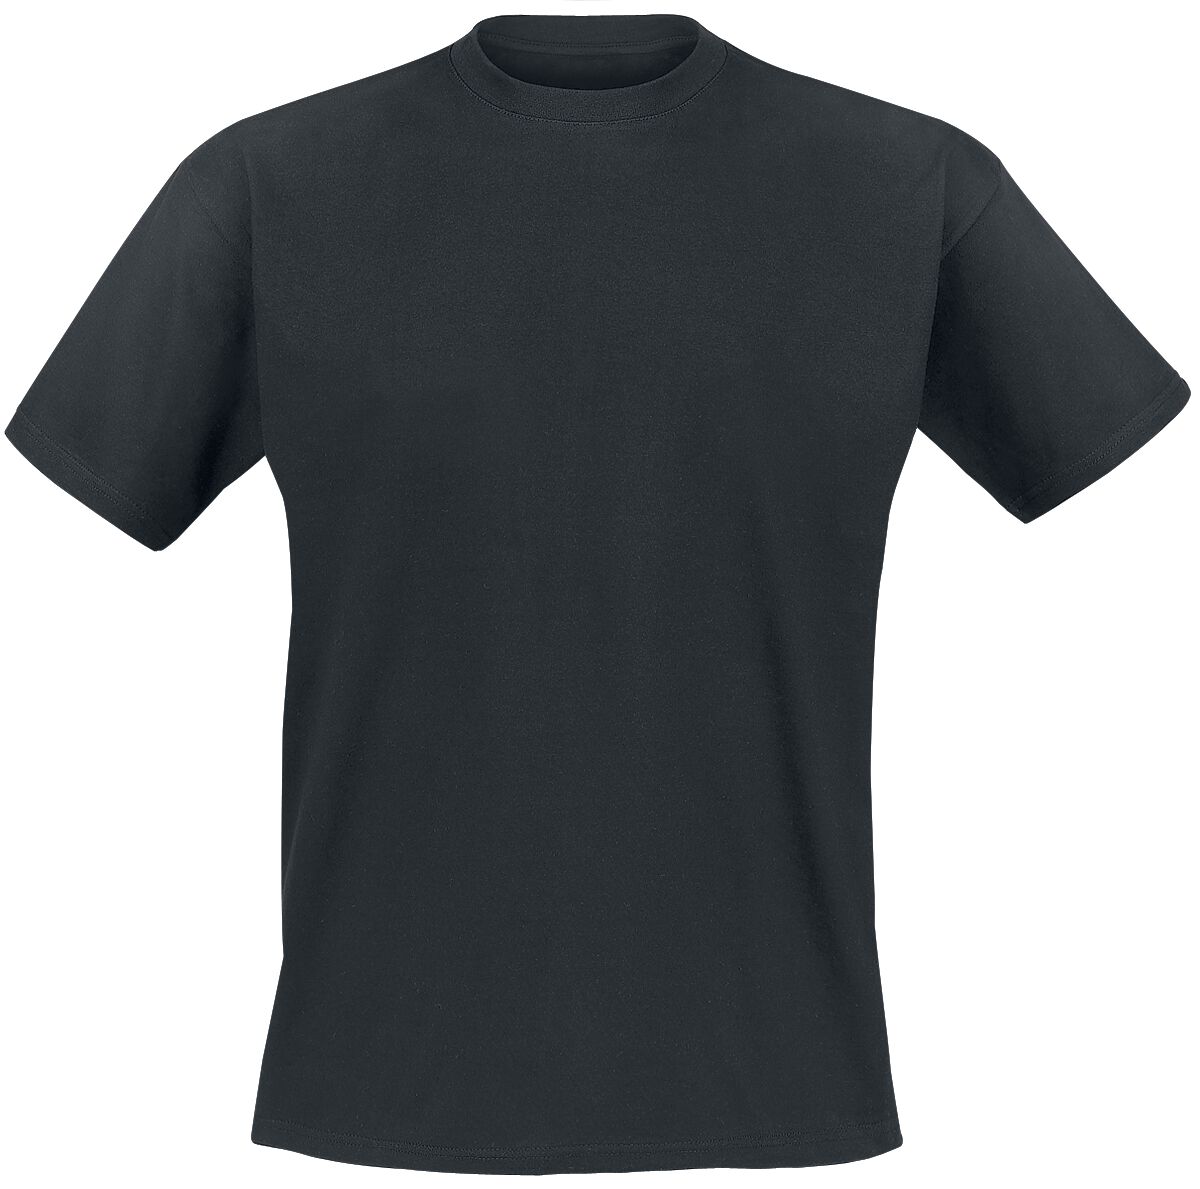 Genesis T-Shirt - Mad Hatter - S bis XXL - für Männer - Größe M - schwarz  - EMP exklusives Merchandise!